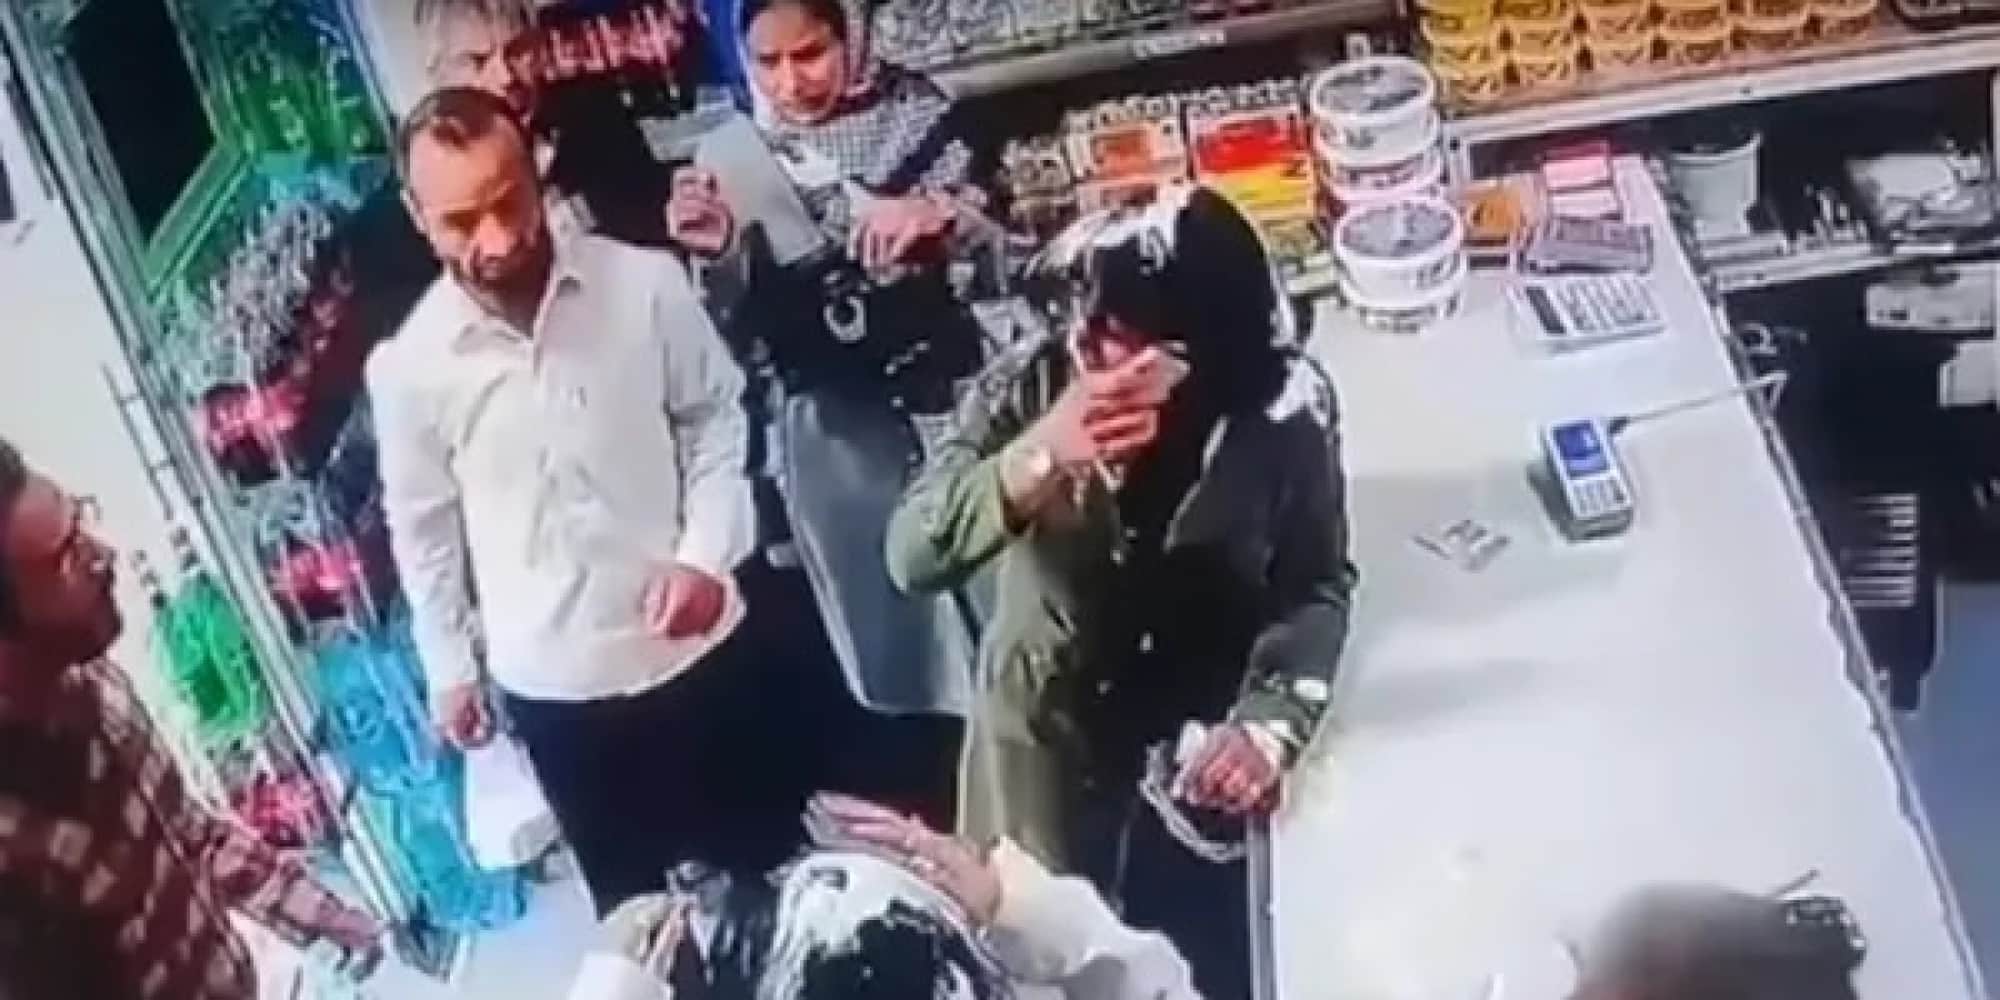 Δύο γυναίκες στο Ιράν δέχθηκαν επίθεση επειδή δεν φορούσαν μαντίλα